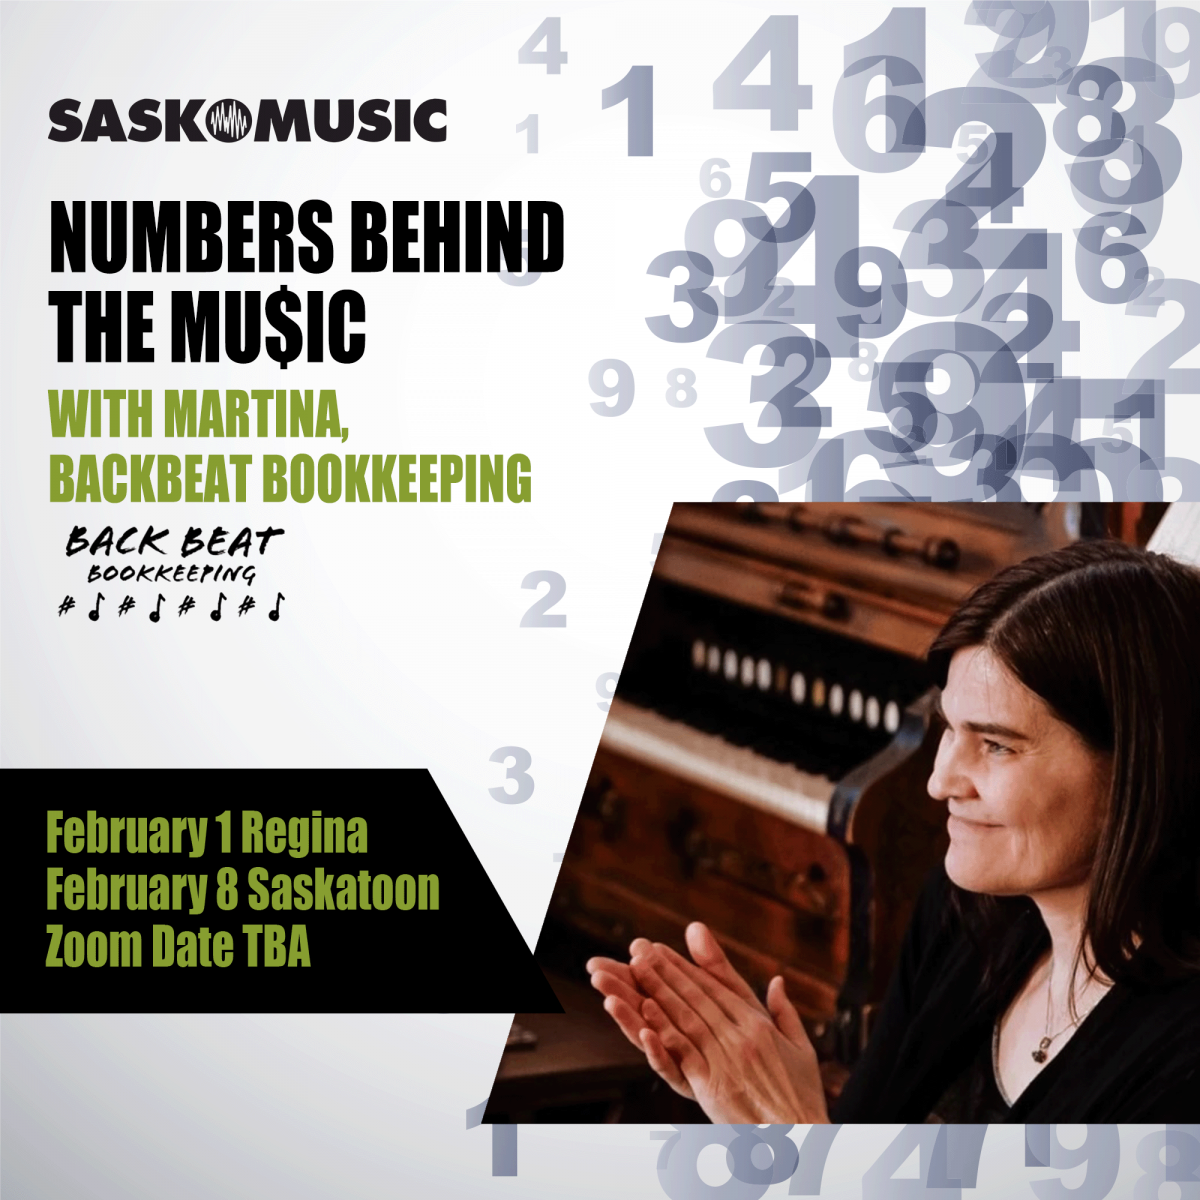 Numbers behind the music workshop